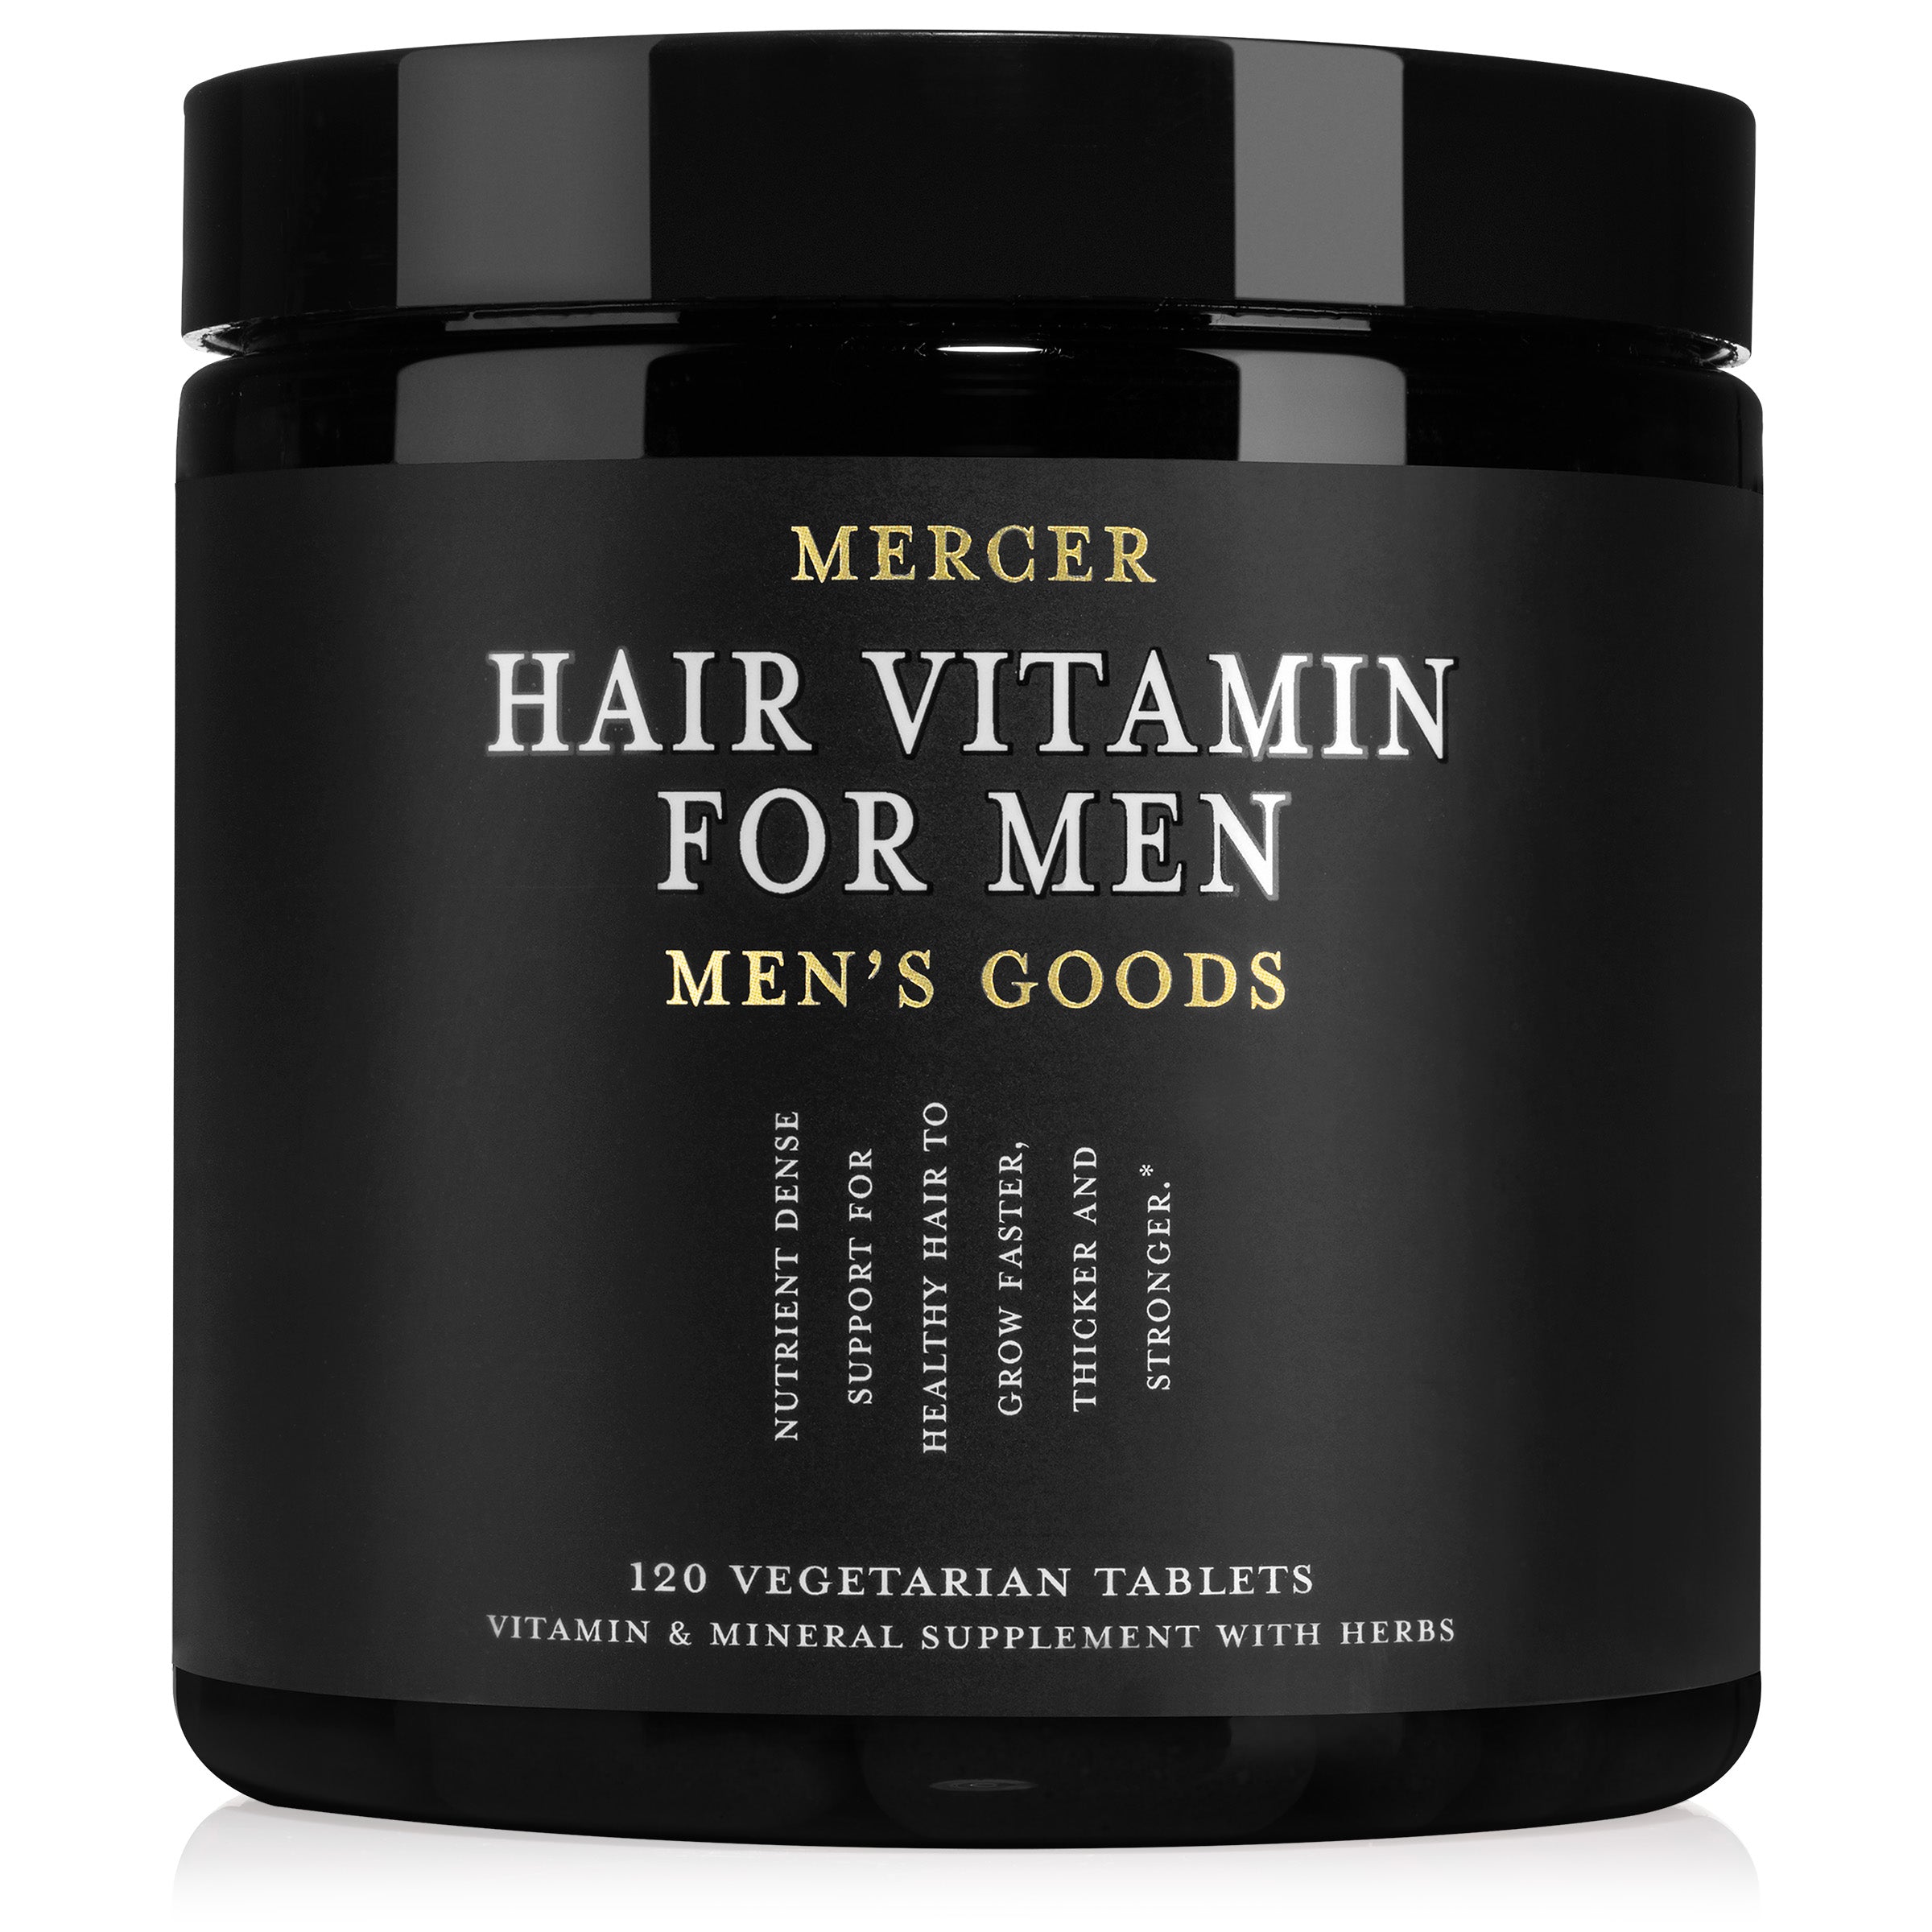 Mercer Hair Vitamin for Men